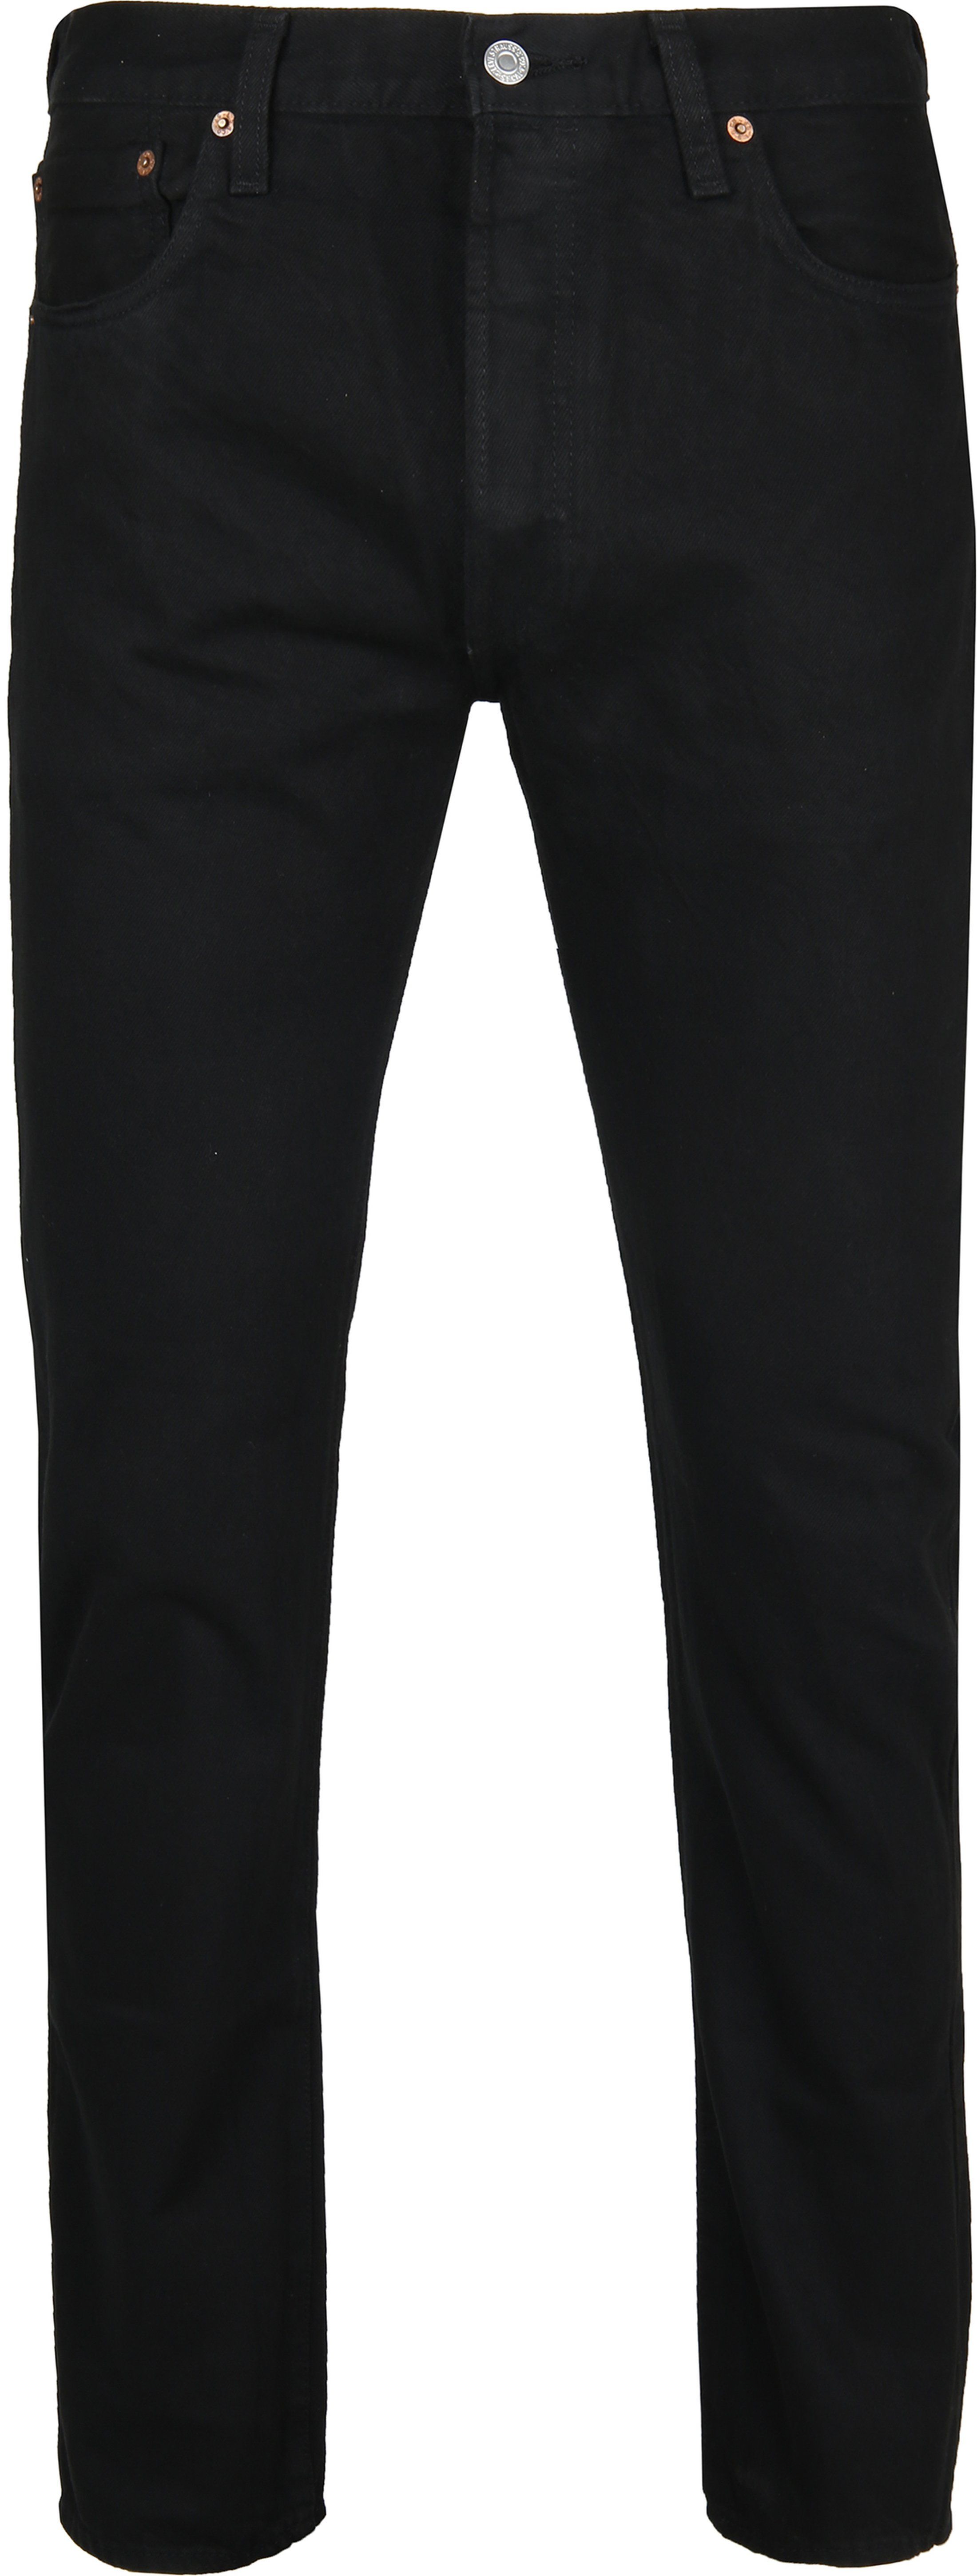 Levis - Levi's 501 jeans original fit 0165 black size w 33